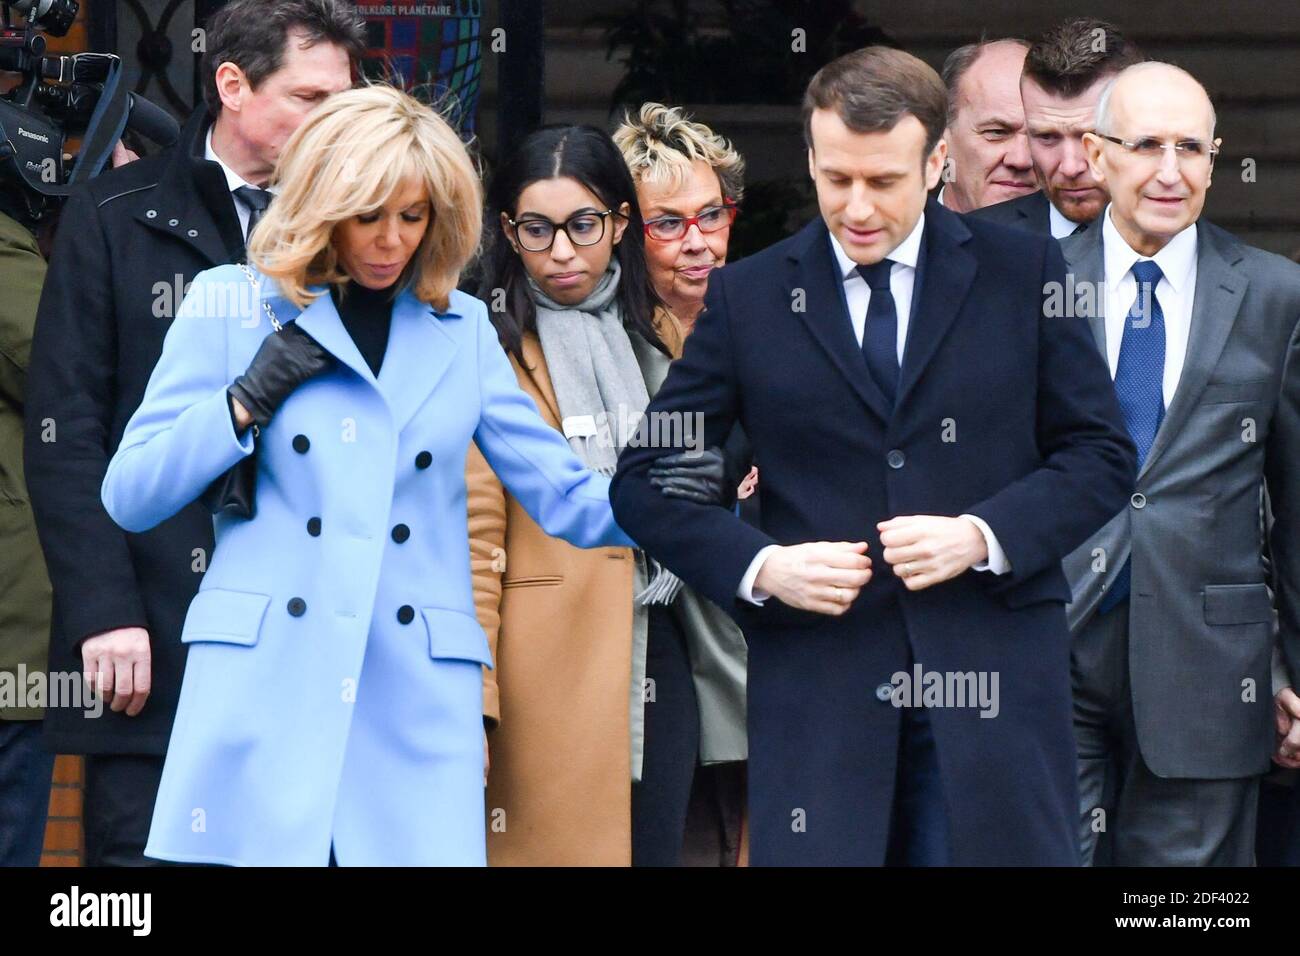 Il presidente francese Emmanuel Macron e sua moglie Brigitte Macron lasciano il seggio elettorale durante il primo turno delle elezioni comunali a le Touquet, in Francia, il 15 marzo 2020. Foto di Francis Petit/ABACAPRESS.COM Foto Stock